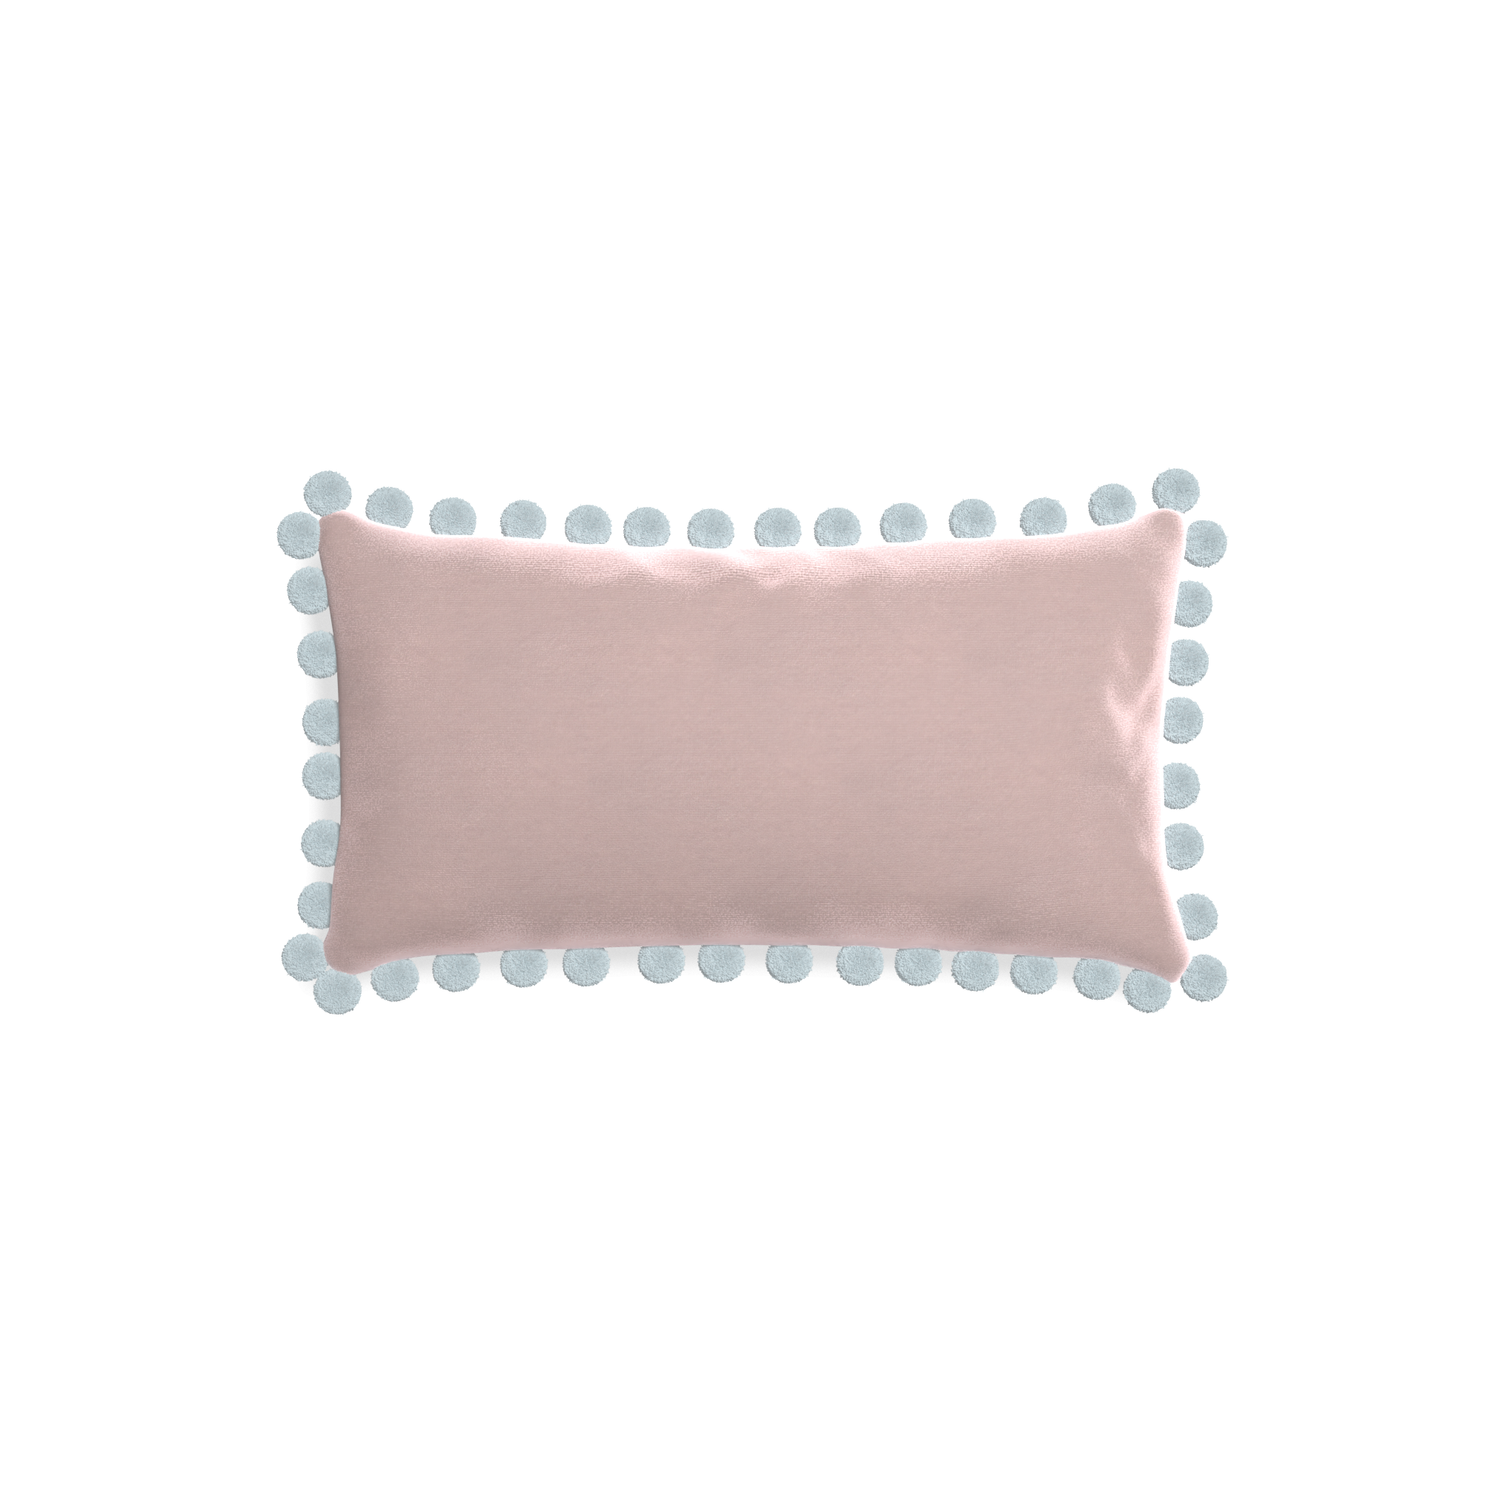 rectangle light pink velvet pillow with light blue pom poms